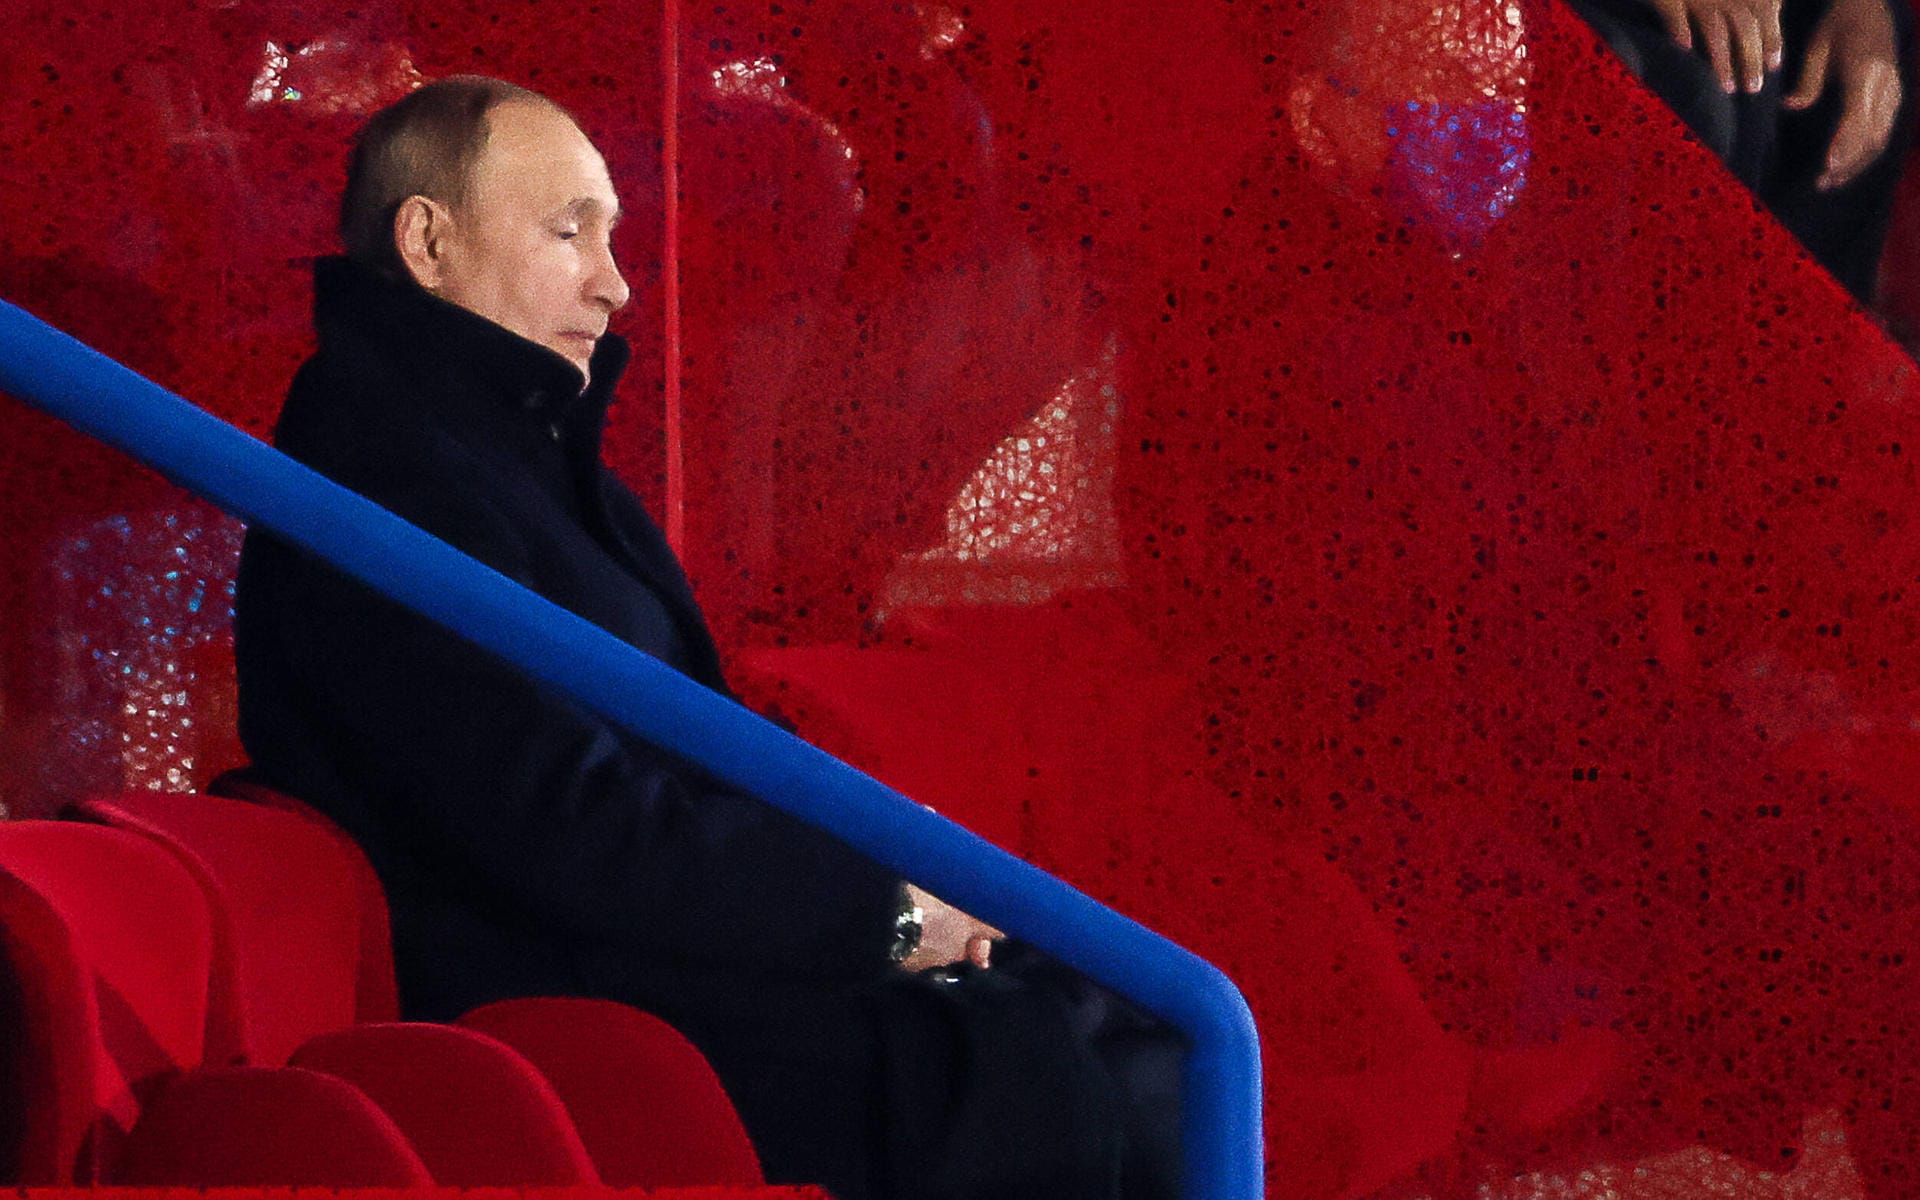 Auch der russische Präsident ist vor Ort: Wladimir Putin sitzt auf der Tribüne und schaut den Sportlern seines Landes beim Einlauf zu.